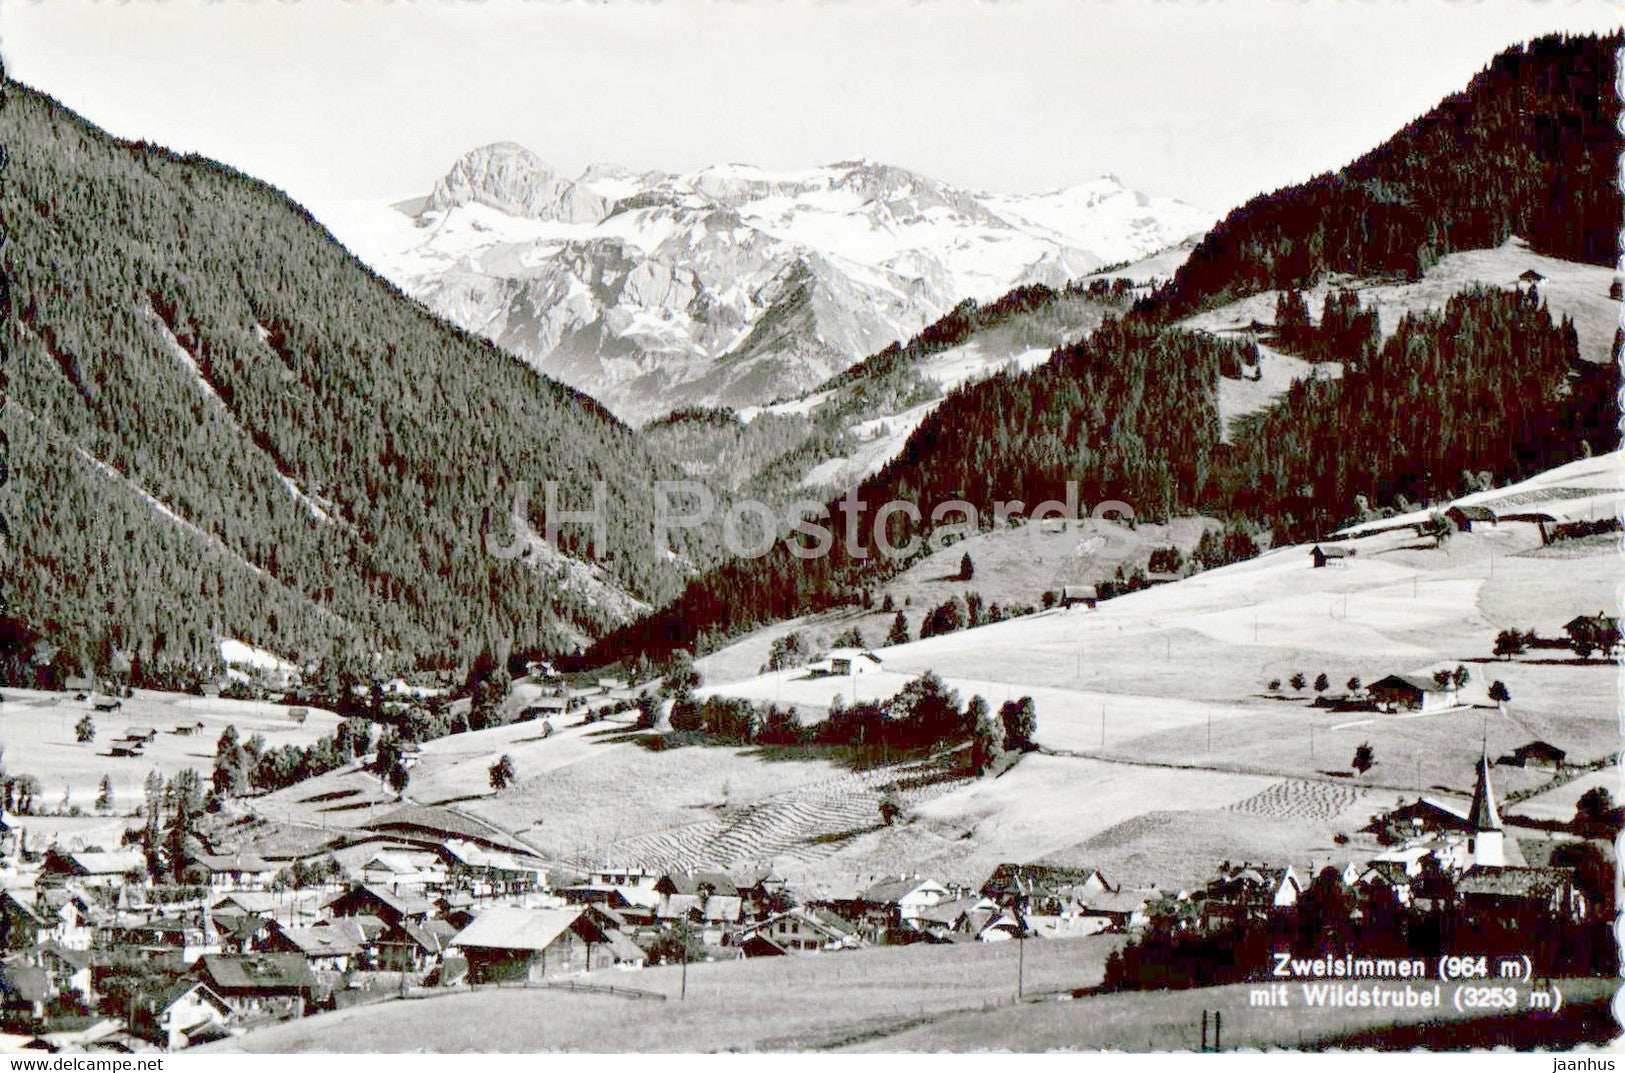 Zweisimmen 964 m - Wildstrubel 3253 m - 1938 - old postcard - Switzerland - used - JH Postcards